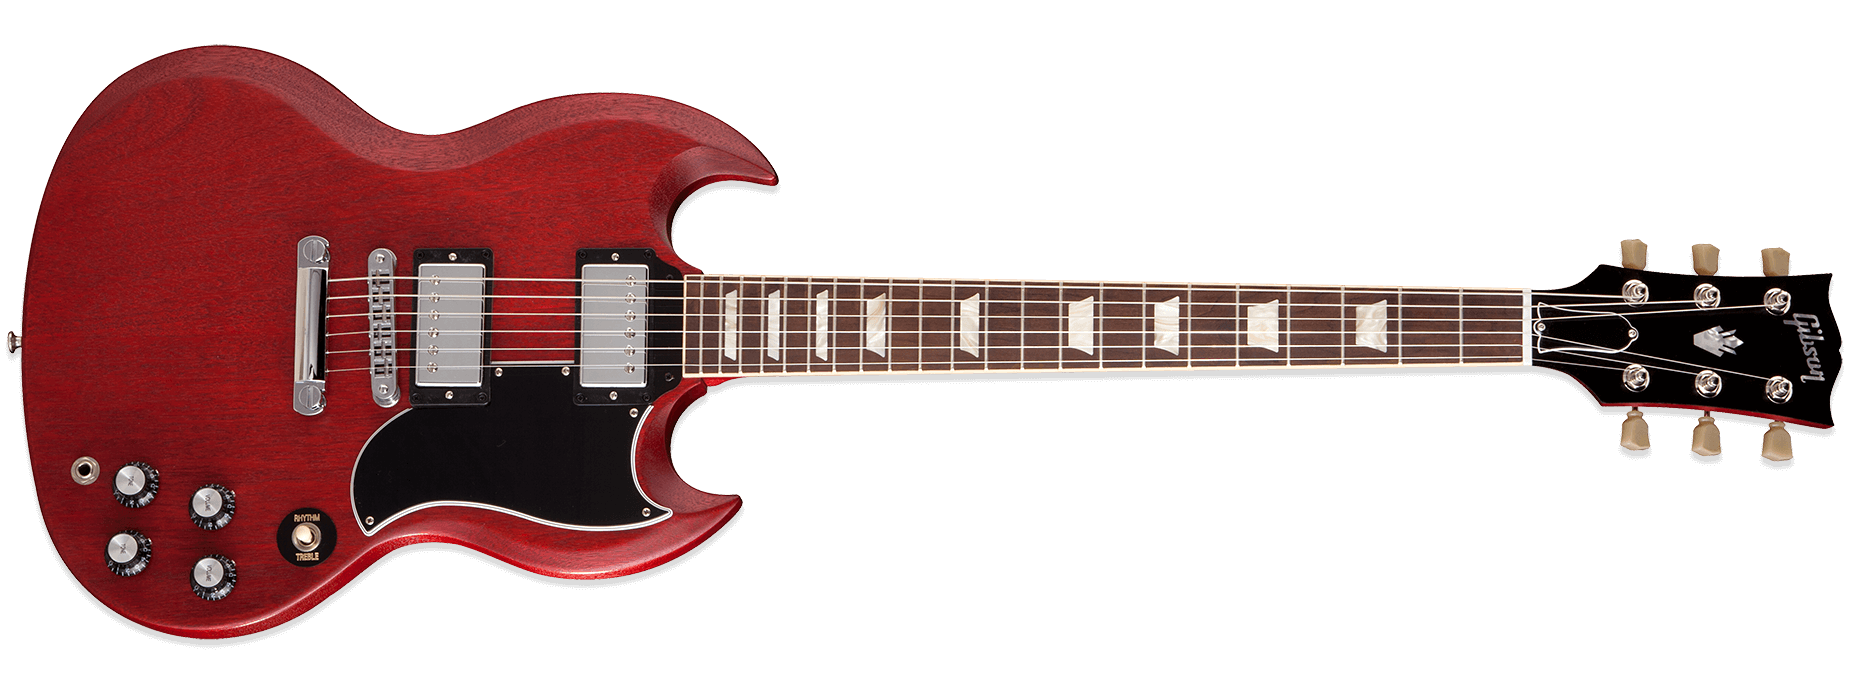 Gibson SG 61 Reissue Satin Worn Cherry